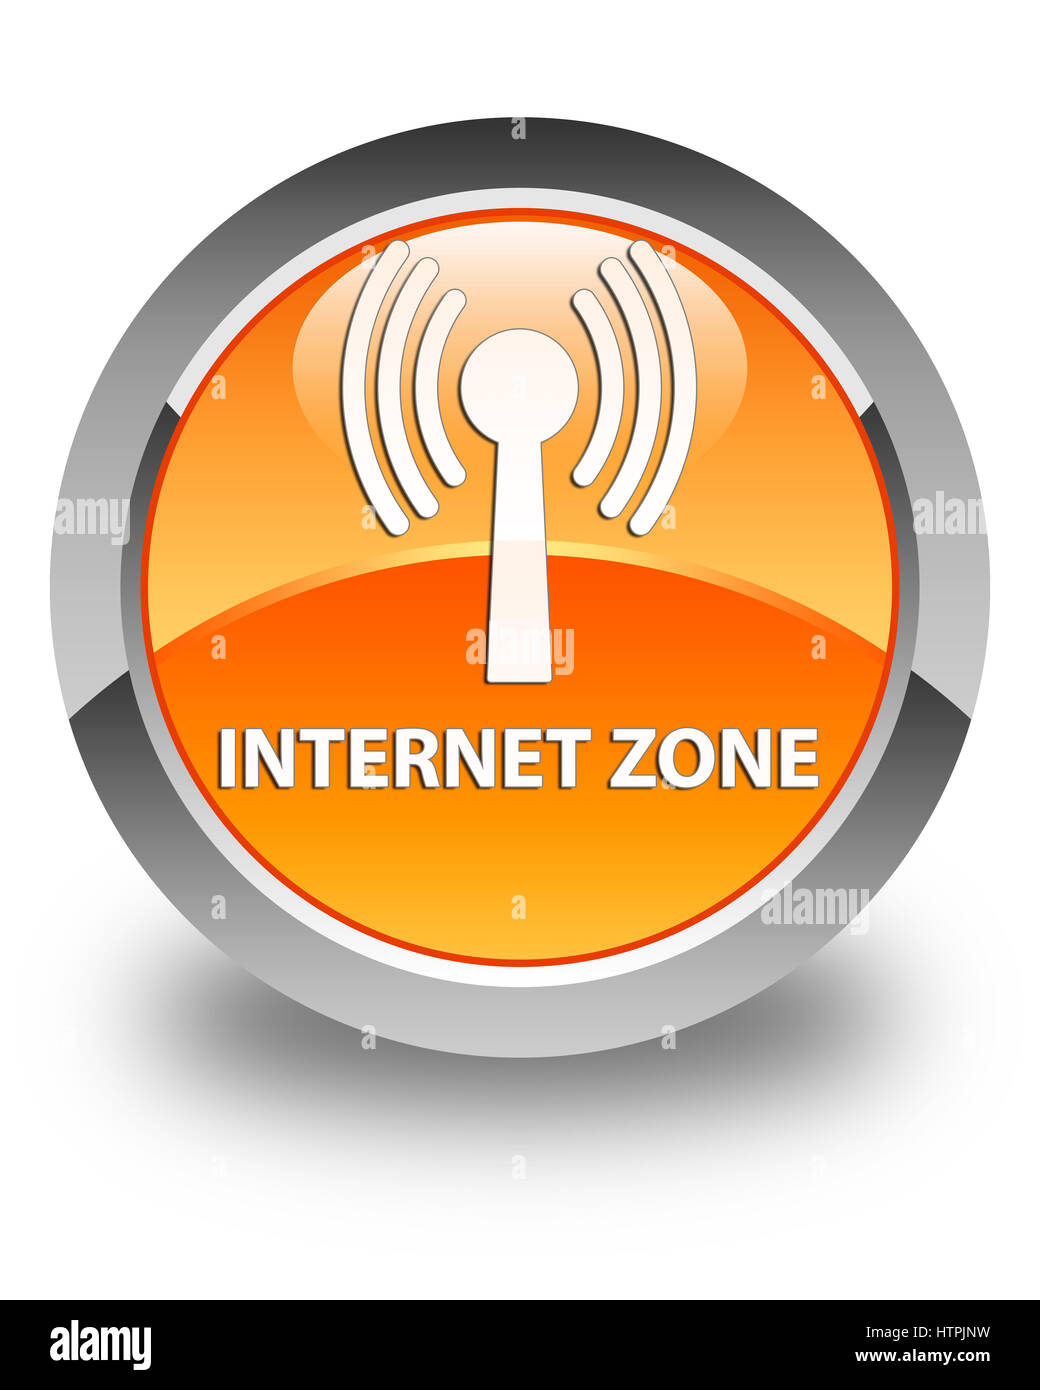 Zone Internet/Wifi (réseau) isolé sur bouton rond orange brillant abstract illustration Banque D'Images